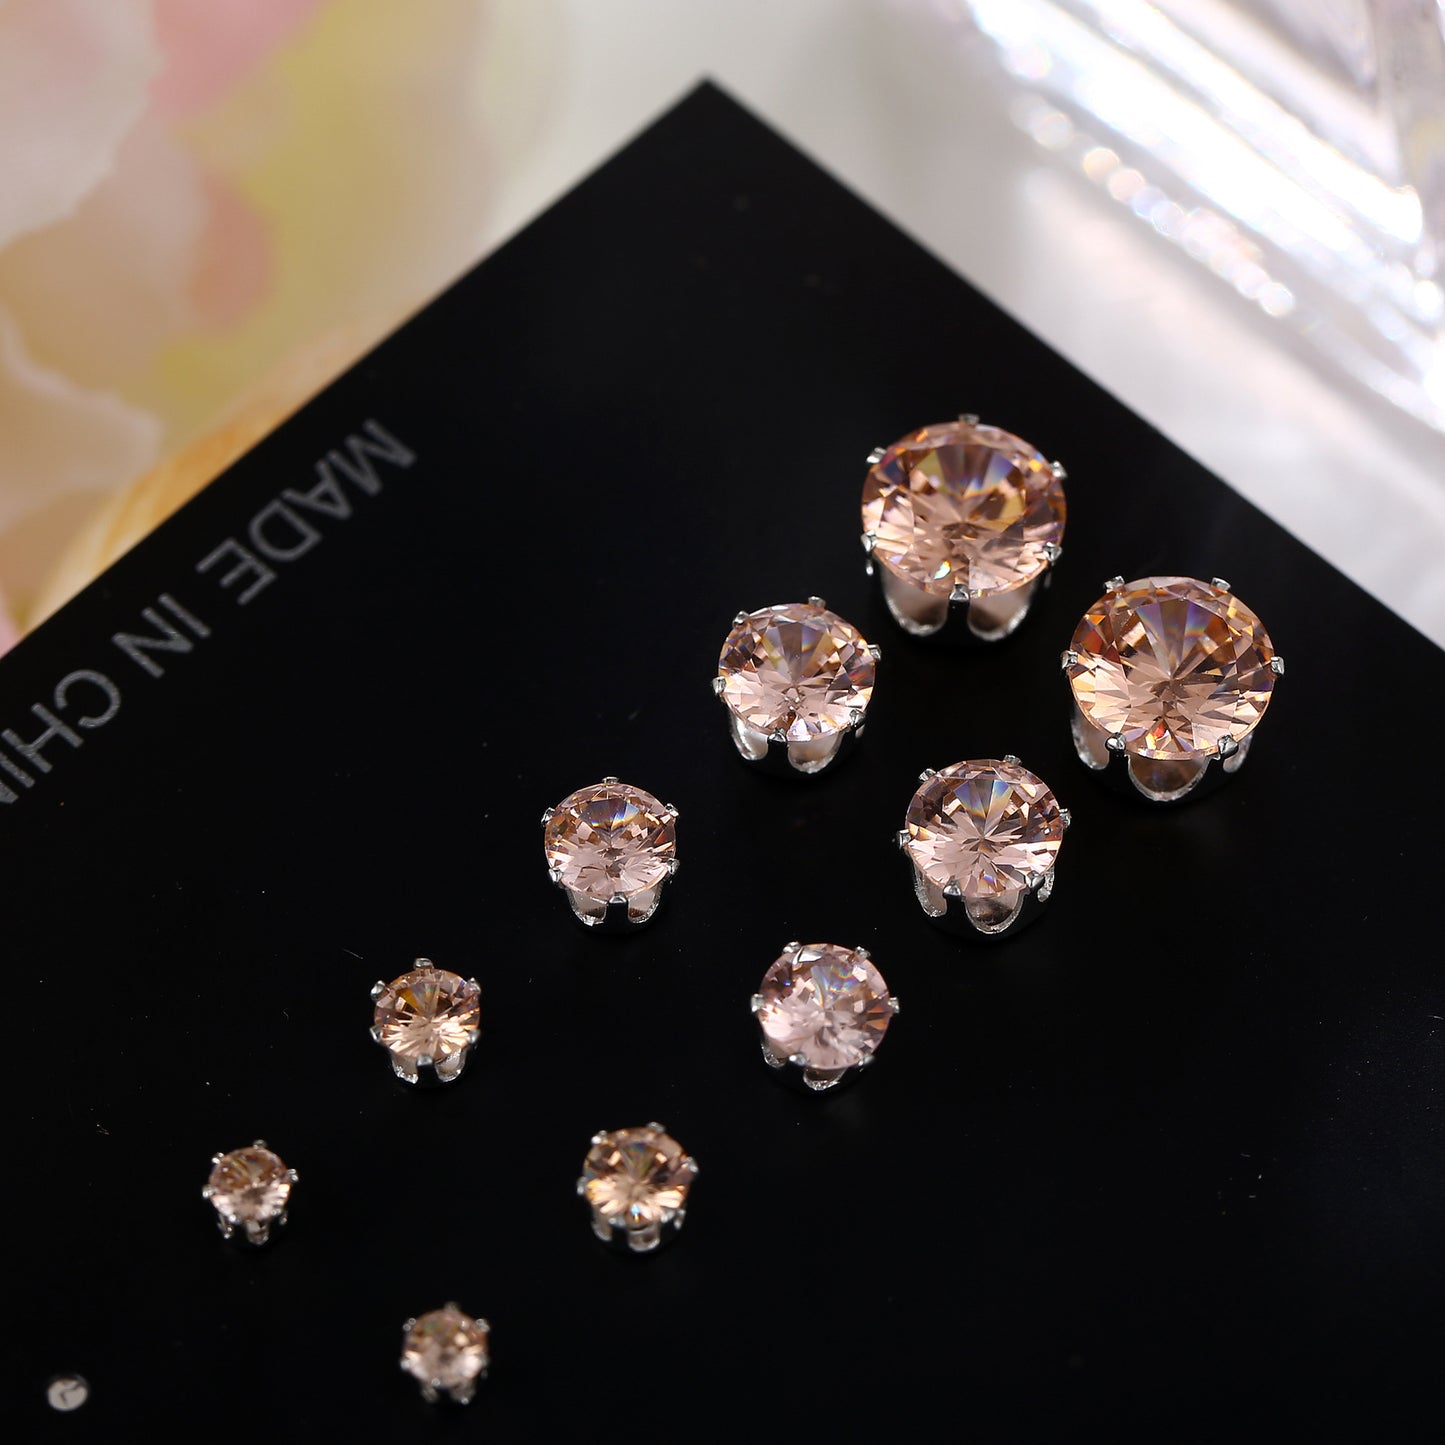 Simple Style Heart Diamond Alloy Artificial Gemstones Earrings Ear Studs